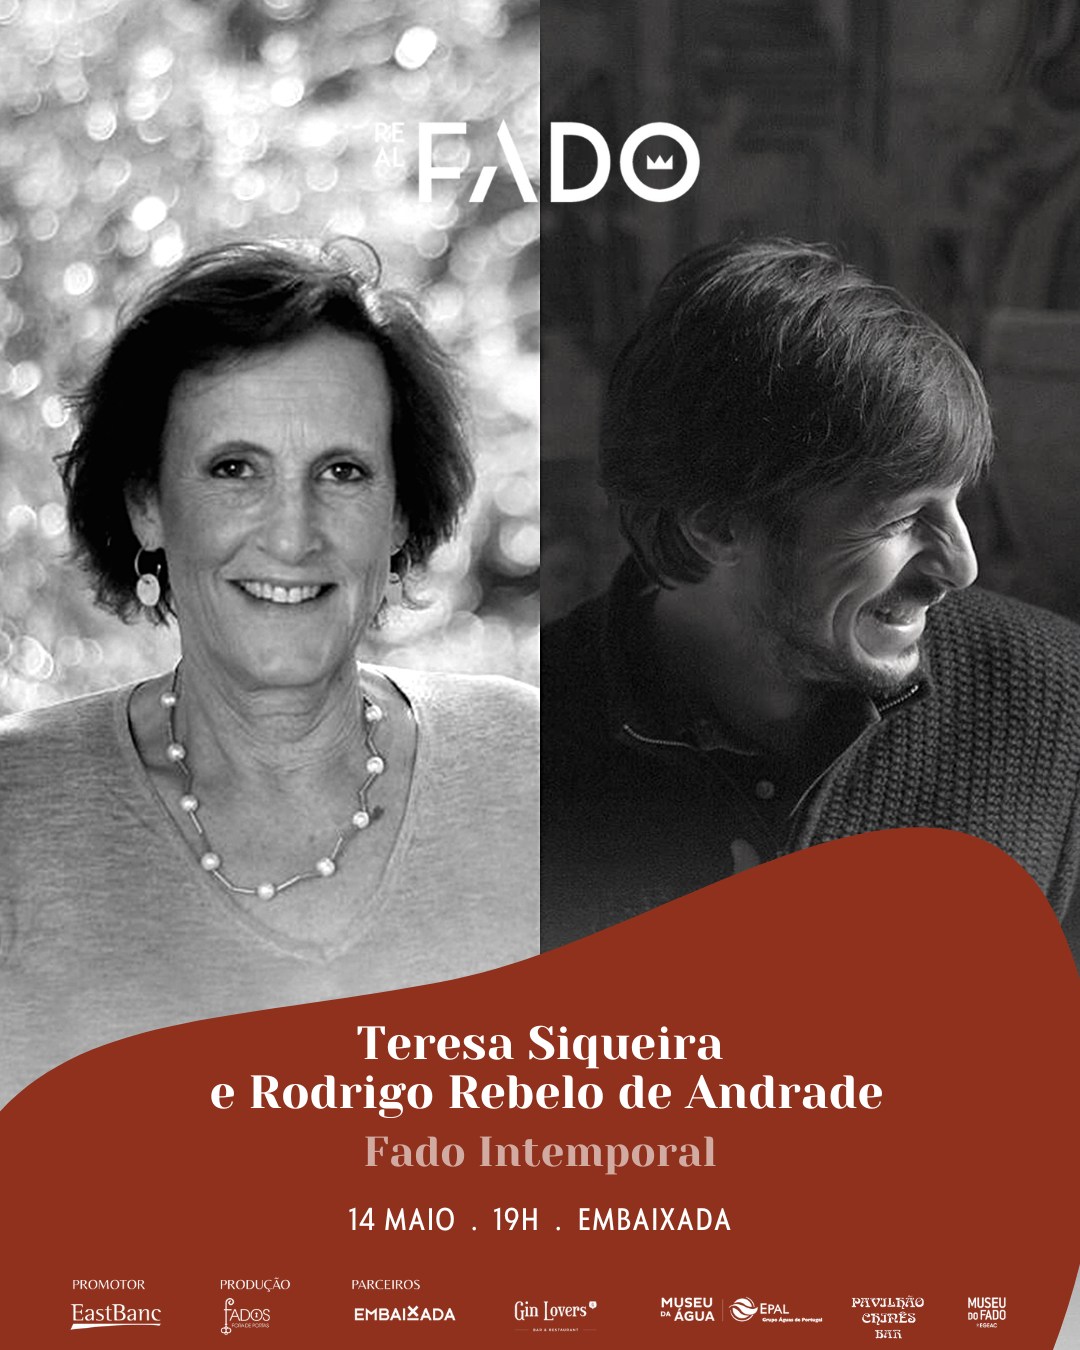 FADO INTEMPORAL com Teresa Siqueira e Rodrigo Rebelo de Andrade